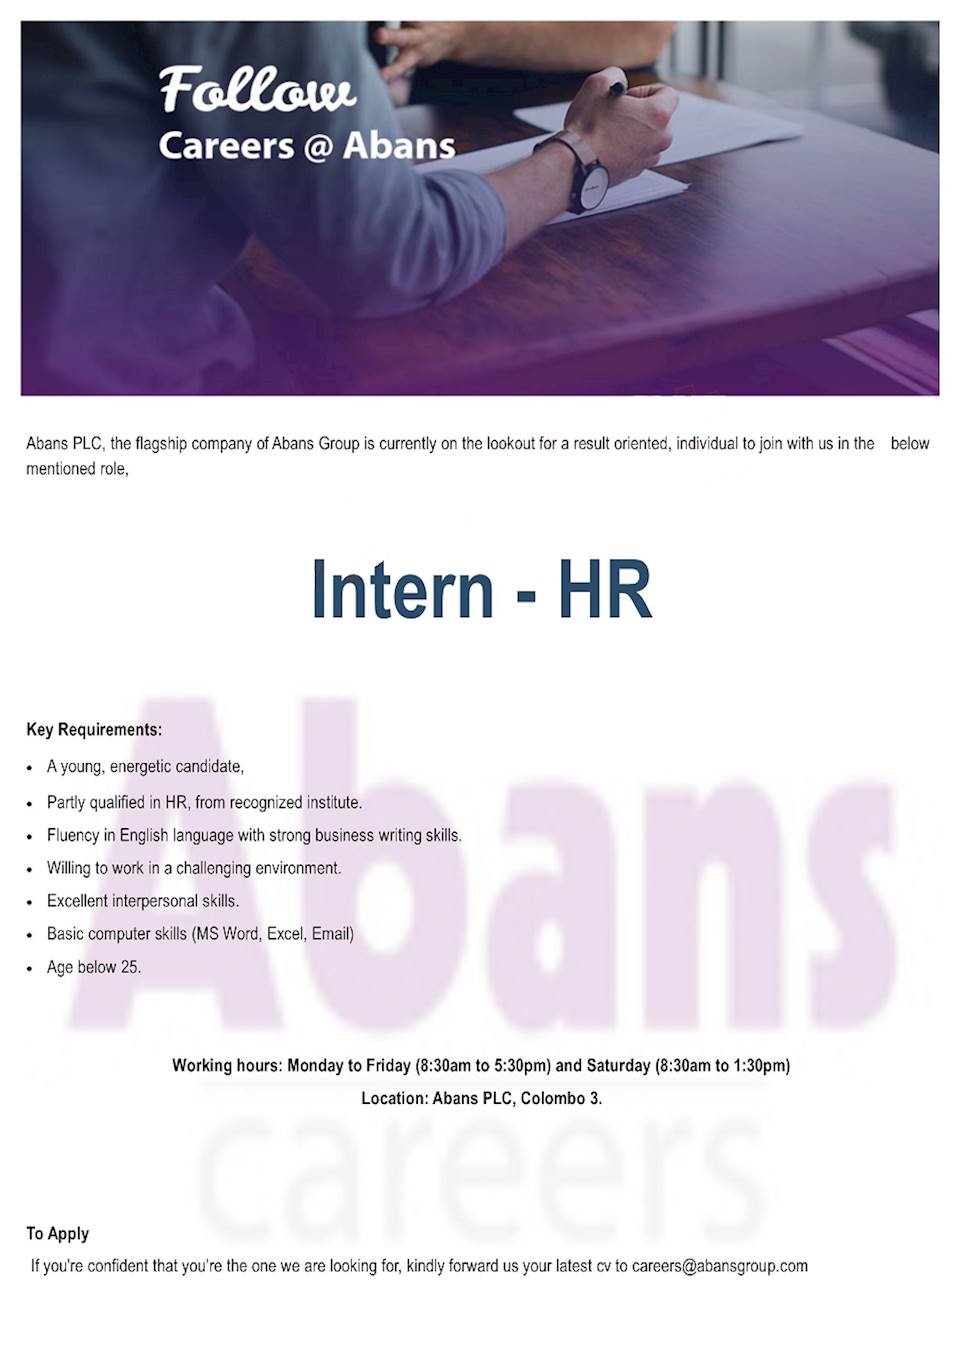 Intern - HR